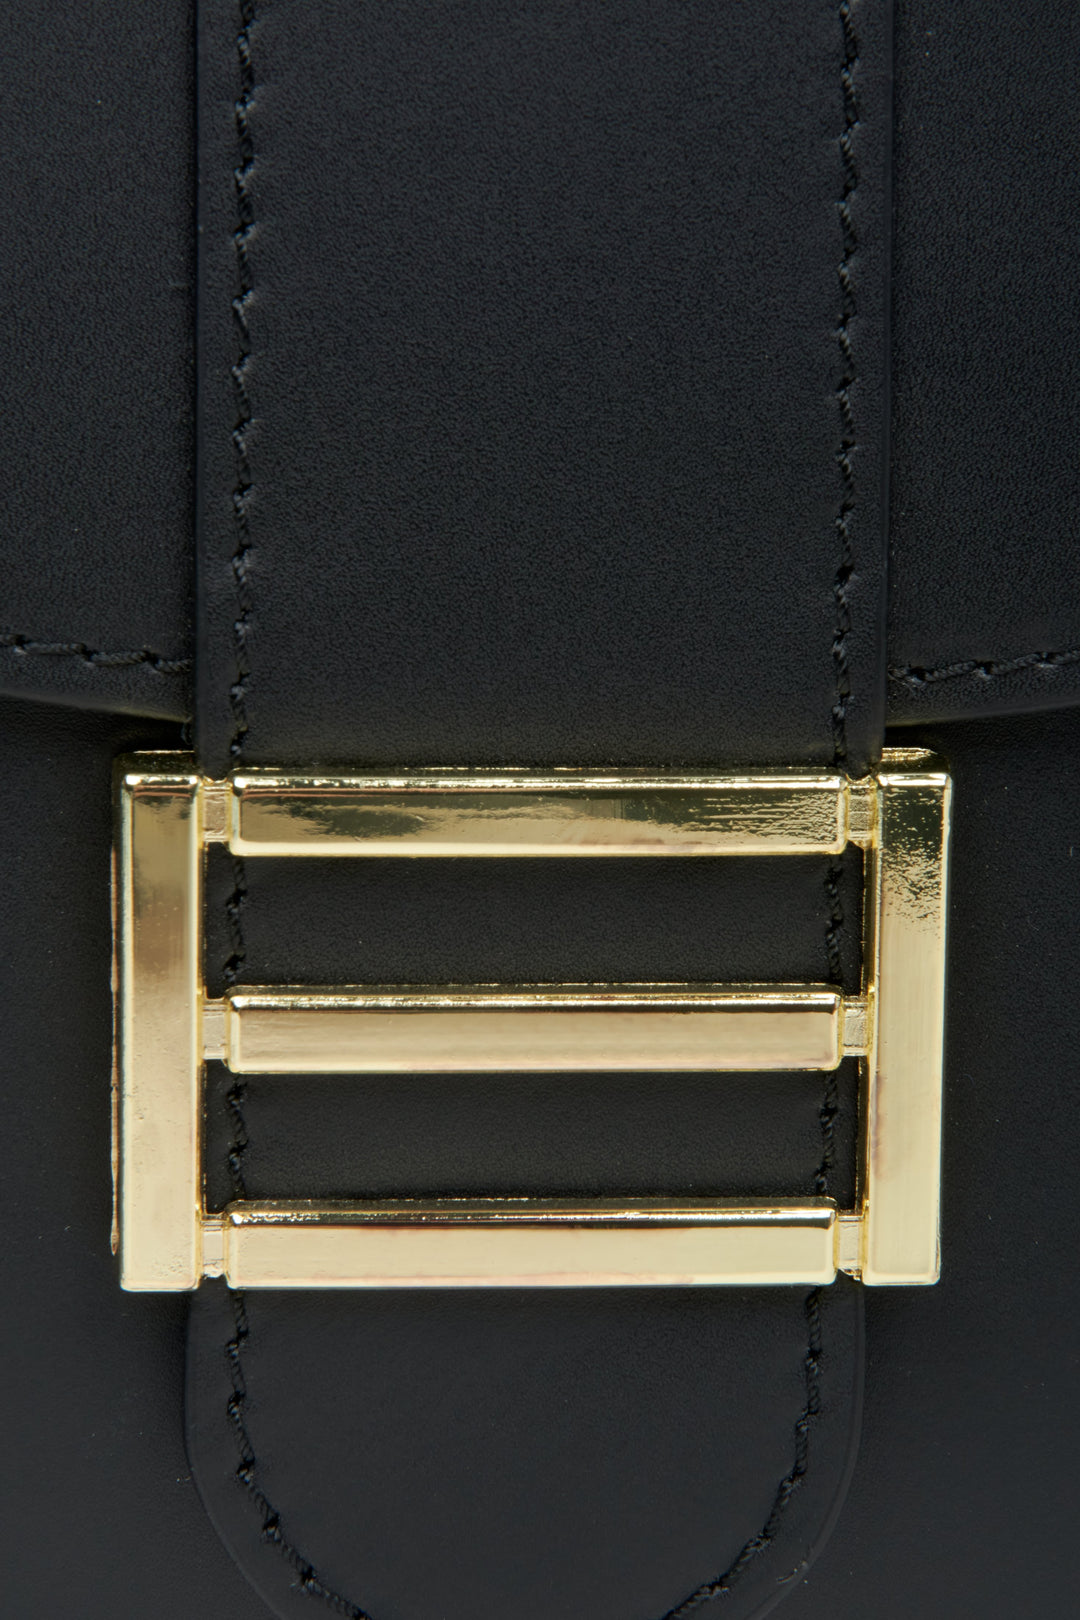 Czarna torebka damska podkowa ze złotymi okuciami marki Estro - zbliżenie na detale.